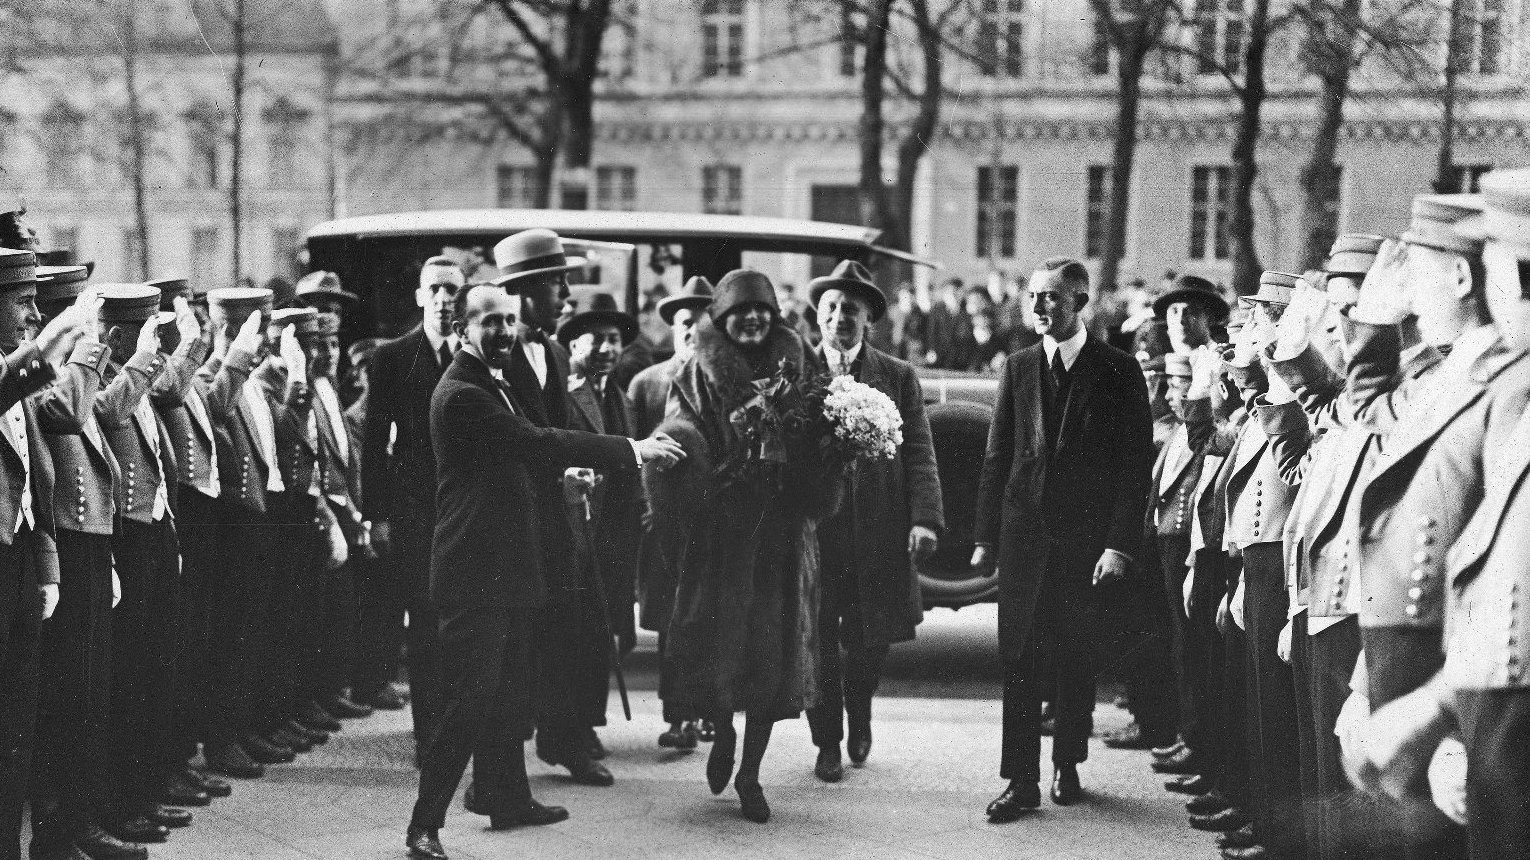 Kobieta w futrze wychodzi z samochodu w towarzystwie kilku mężczyzna. Po prawej i lewej stronie rząd osób z podniesionymi rękami.